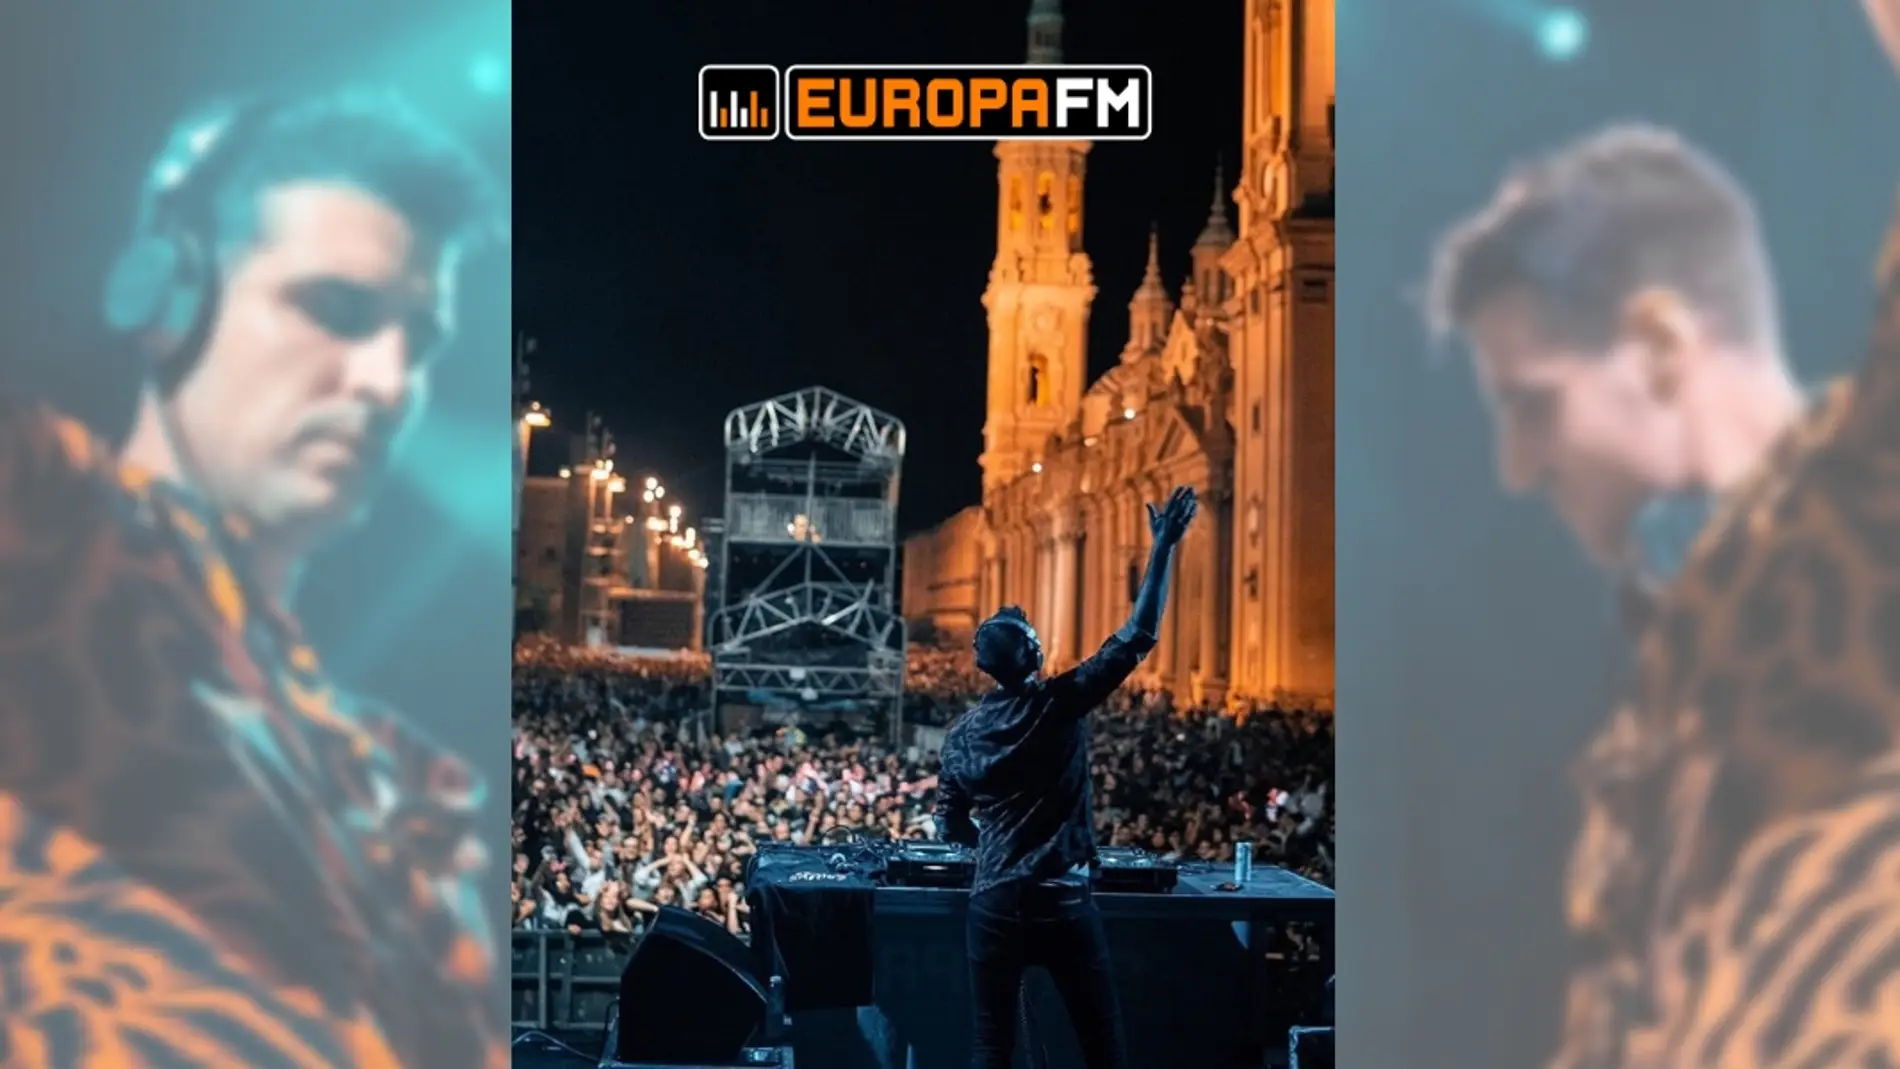 Uri Sabat en el escenario Europa FM en las Fiestas del Pilar